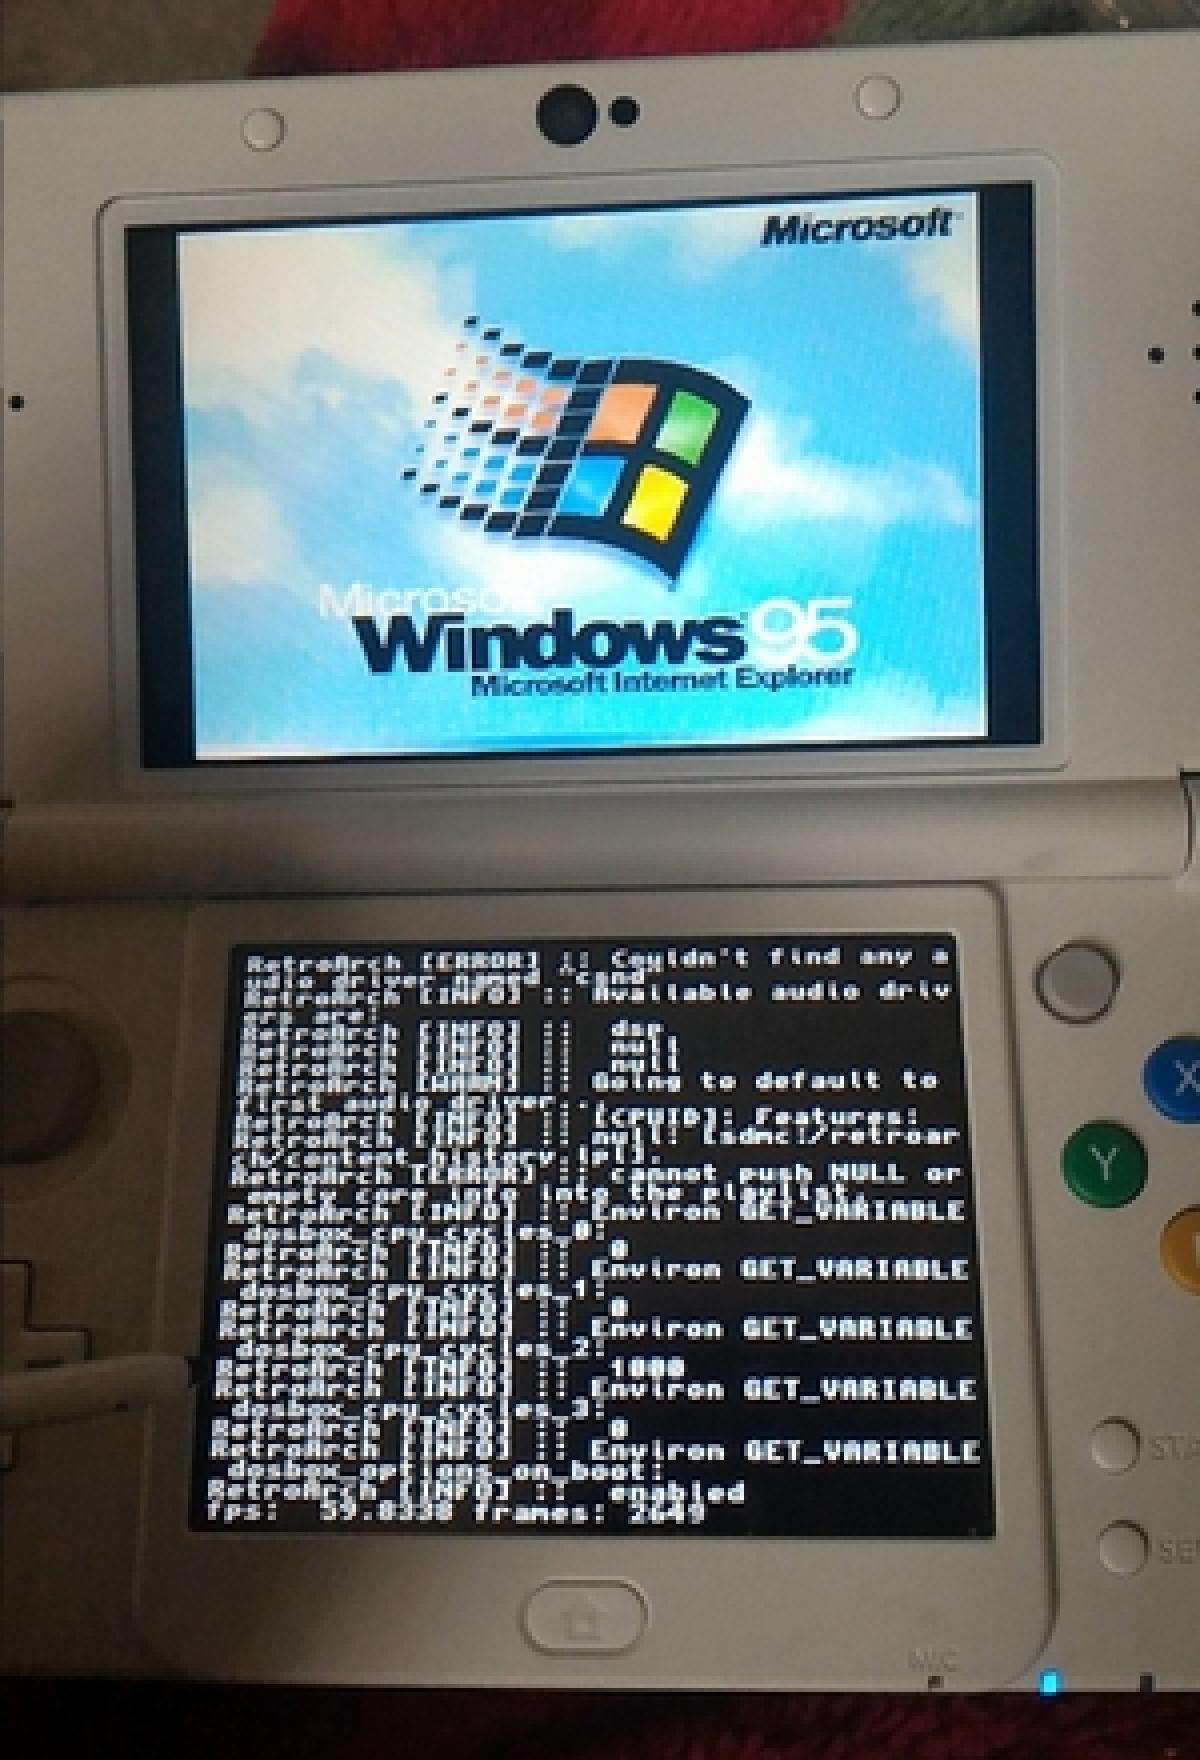 Consiguen Instalar Windows 95 En Una Consola Nintendo 3ds Xl Tecnologia Computerhoy Com